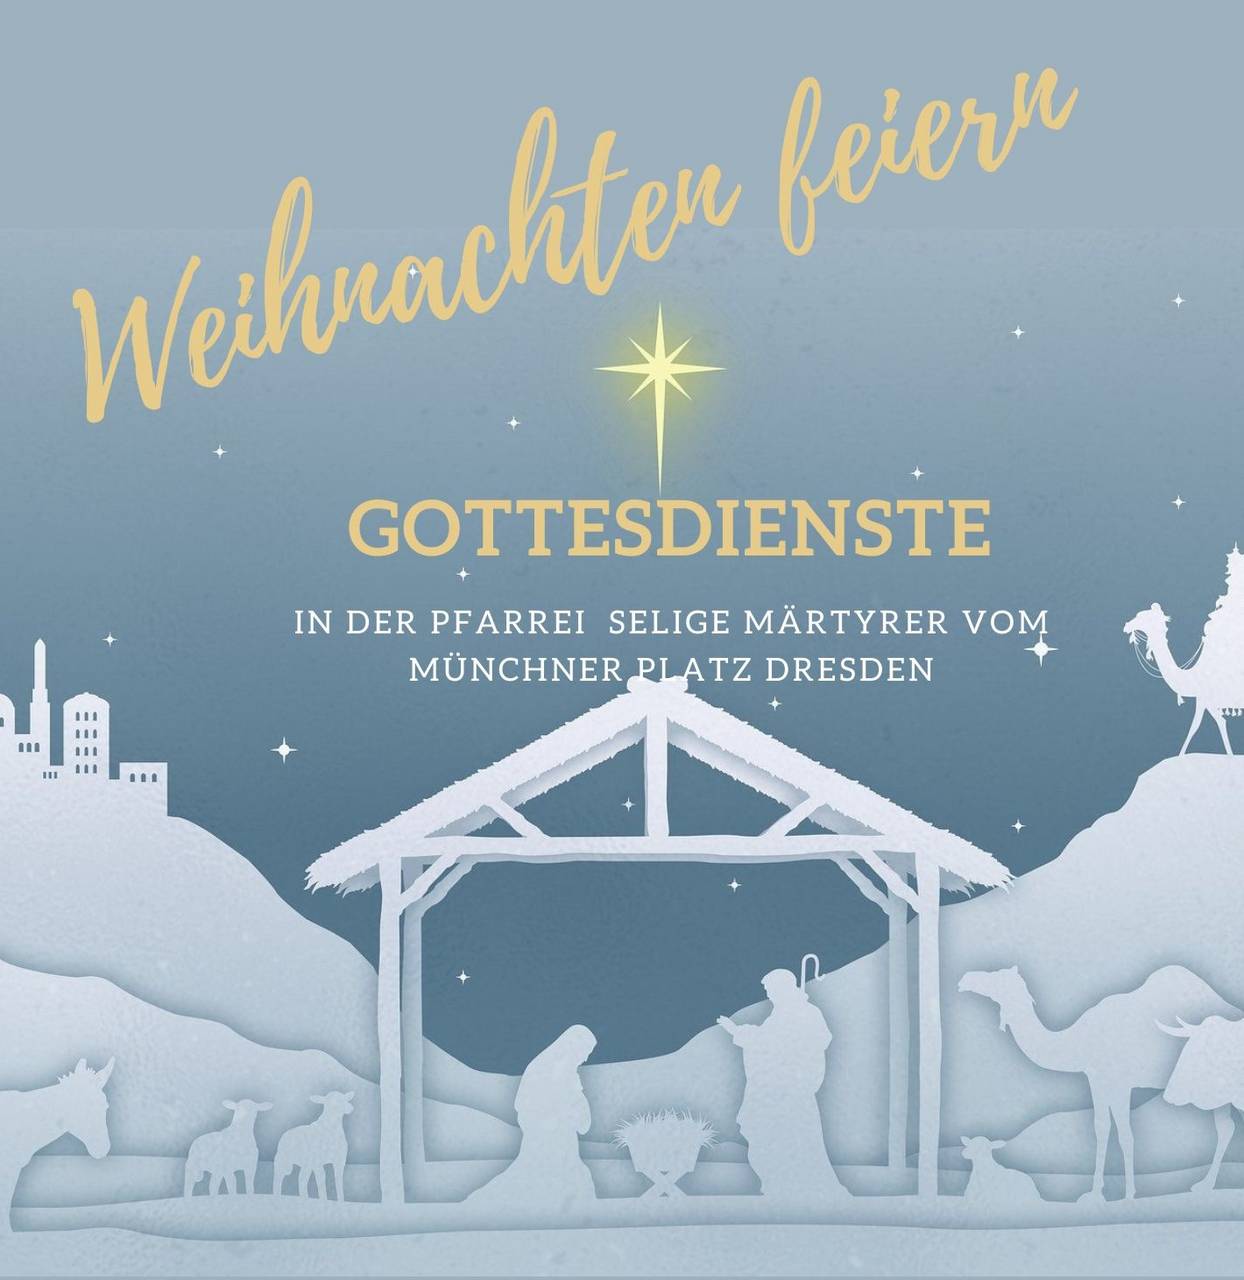 m_white and gold bethlehem church invitation-1 | Kath. Pfarrei Selige Märtyrer vom Münchner Platz - Aktuelles St. Antonius - Weihnachten in der Pfarrei